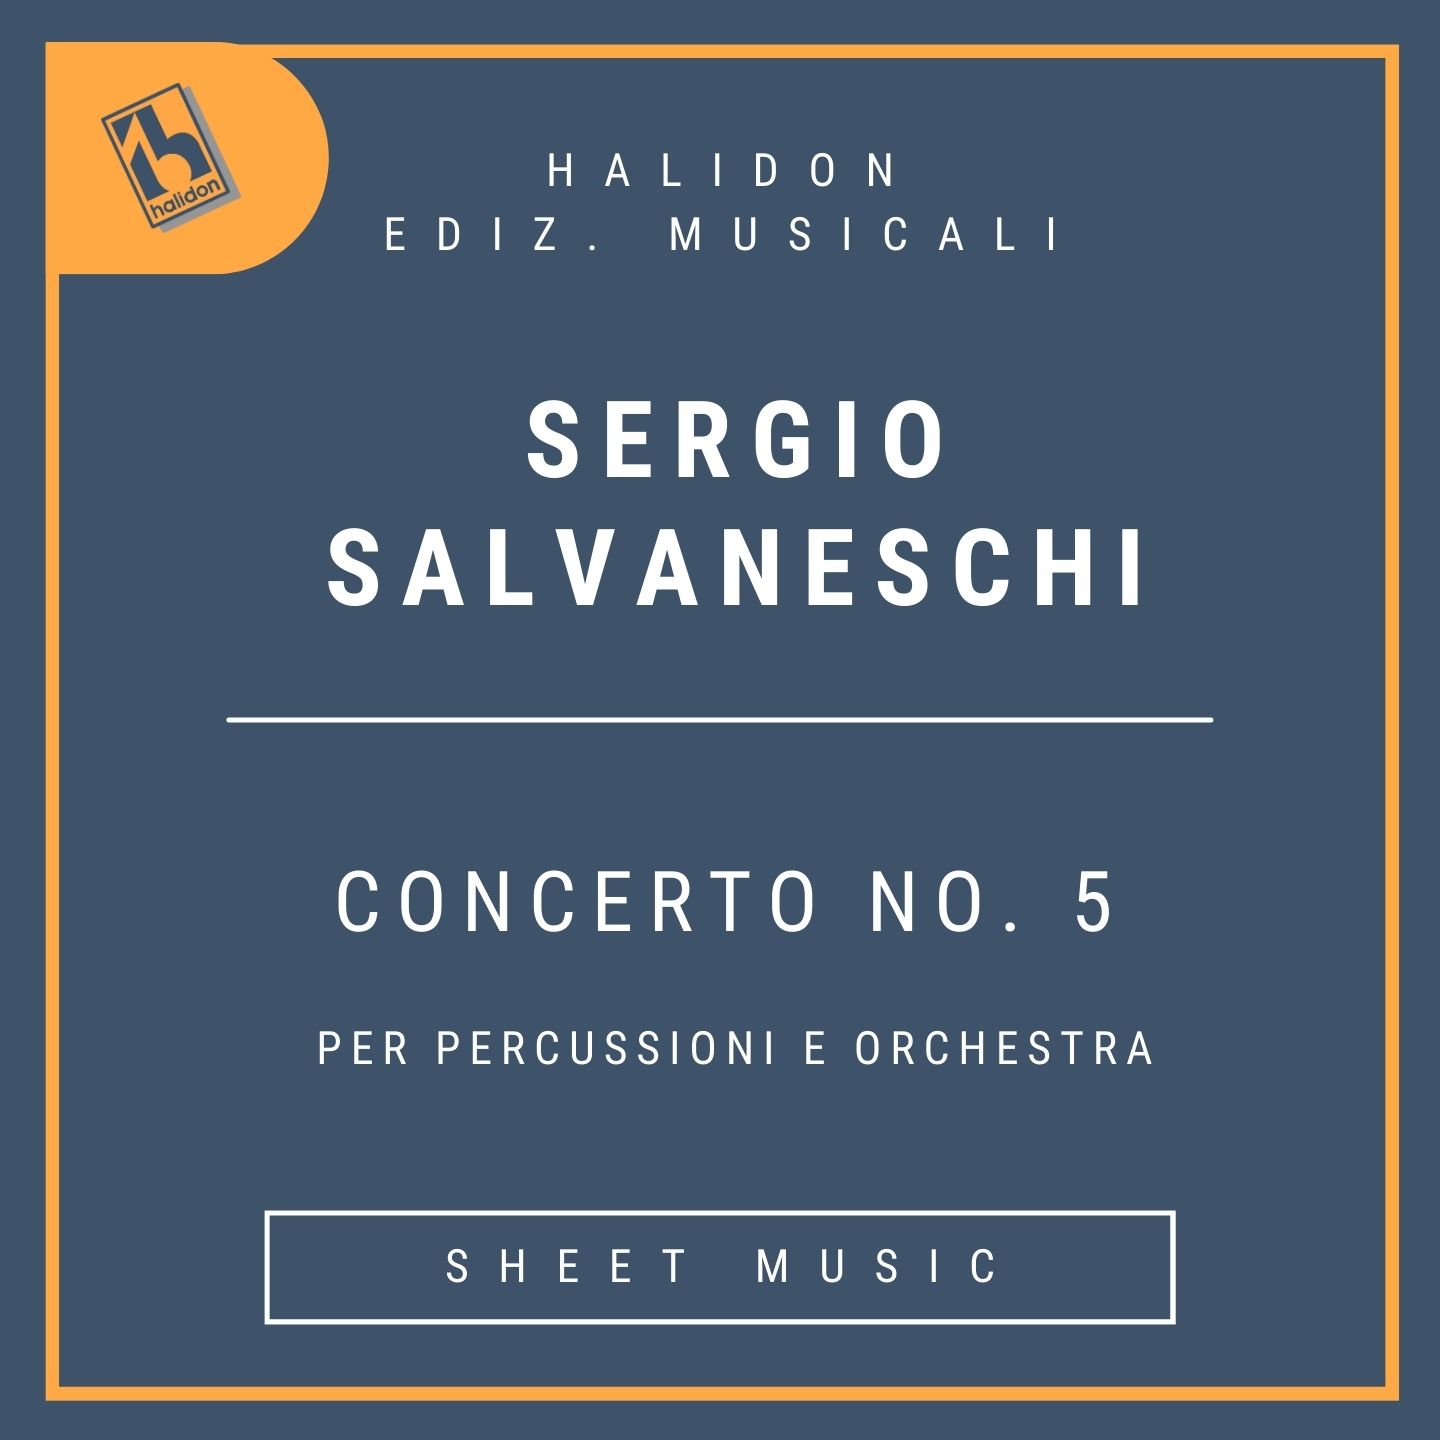 Concerto No. 5 per percussioni e orchestra